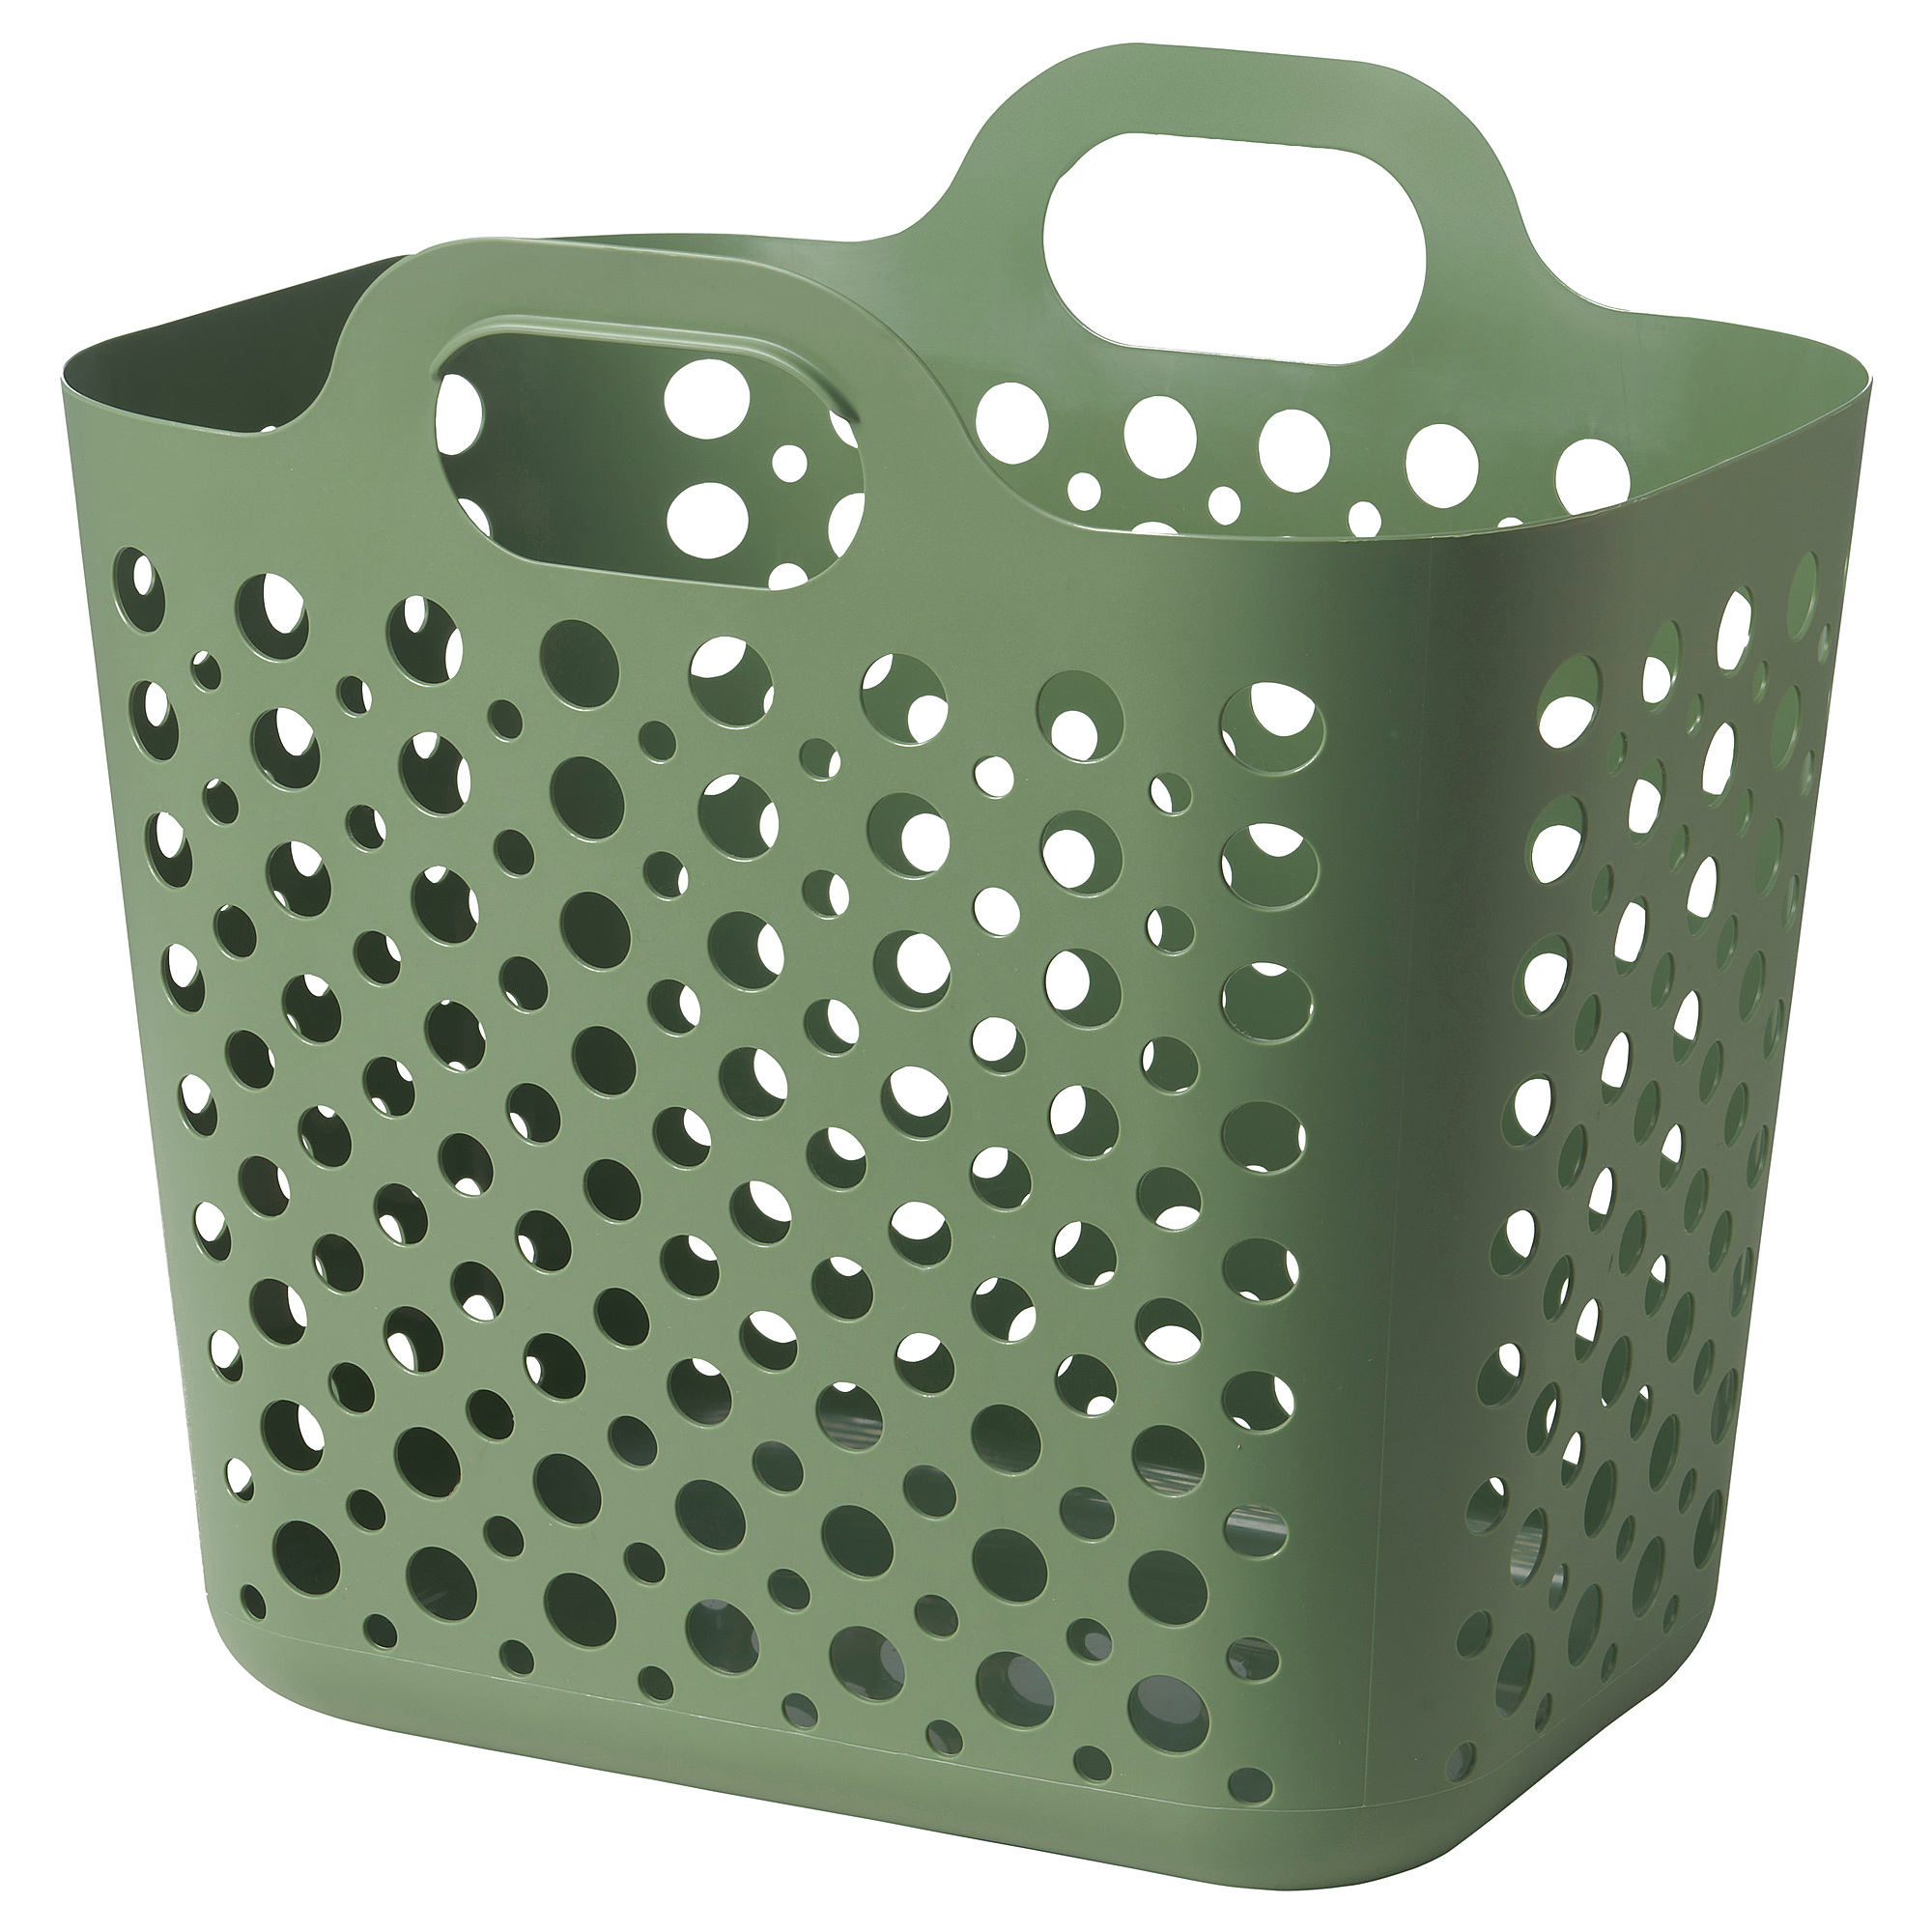 SLIBB - 洗衣籃, 綠色, 24 升| IKEA 香港及澳門